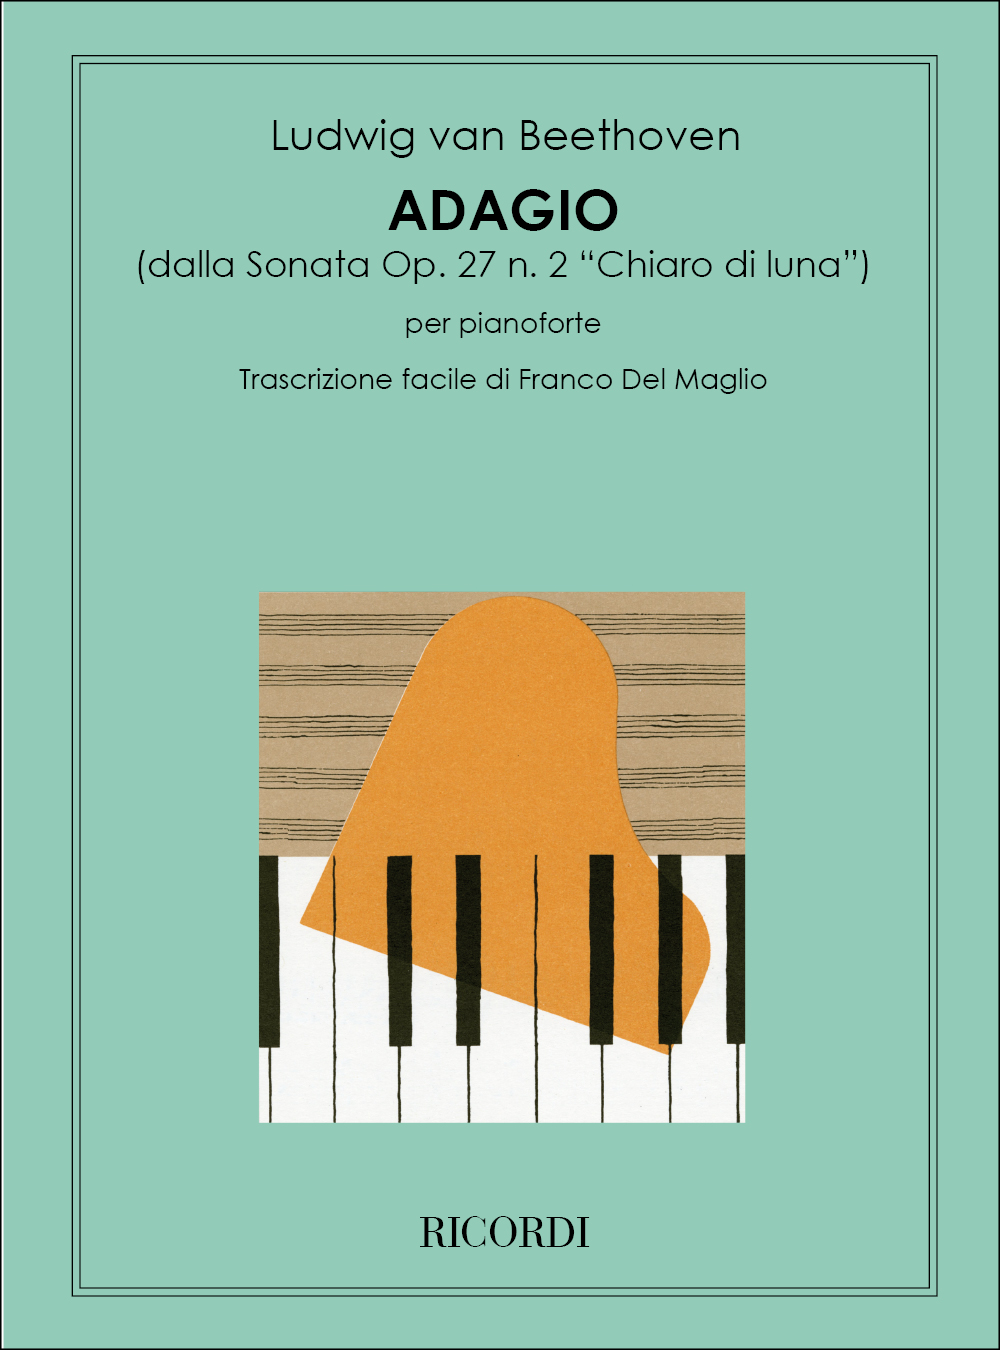 Ludwig van Beethoven: Adagio Sostenuto: Piano